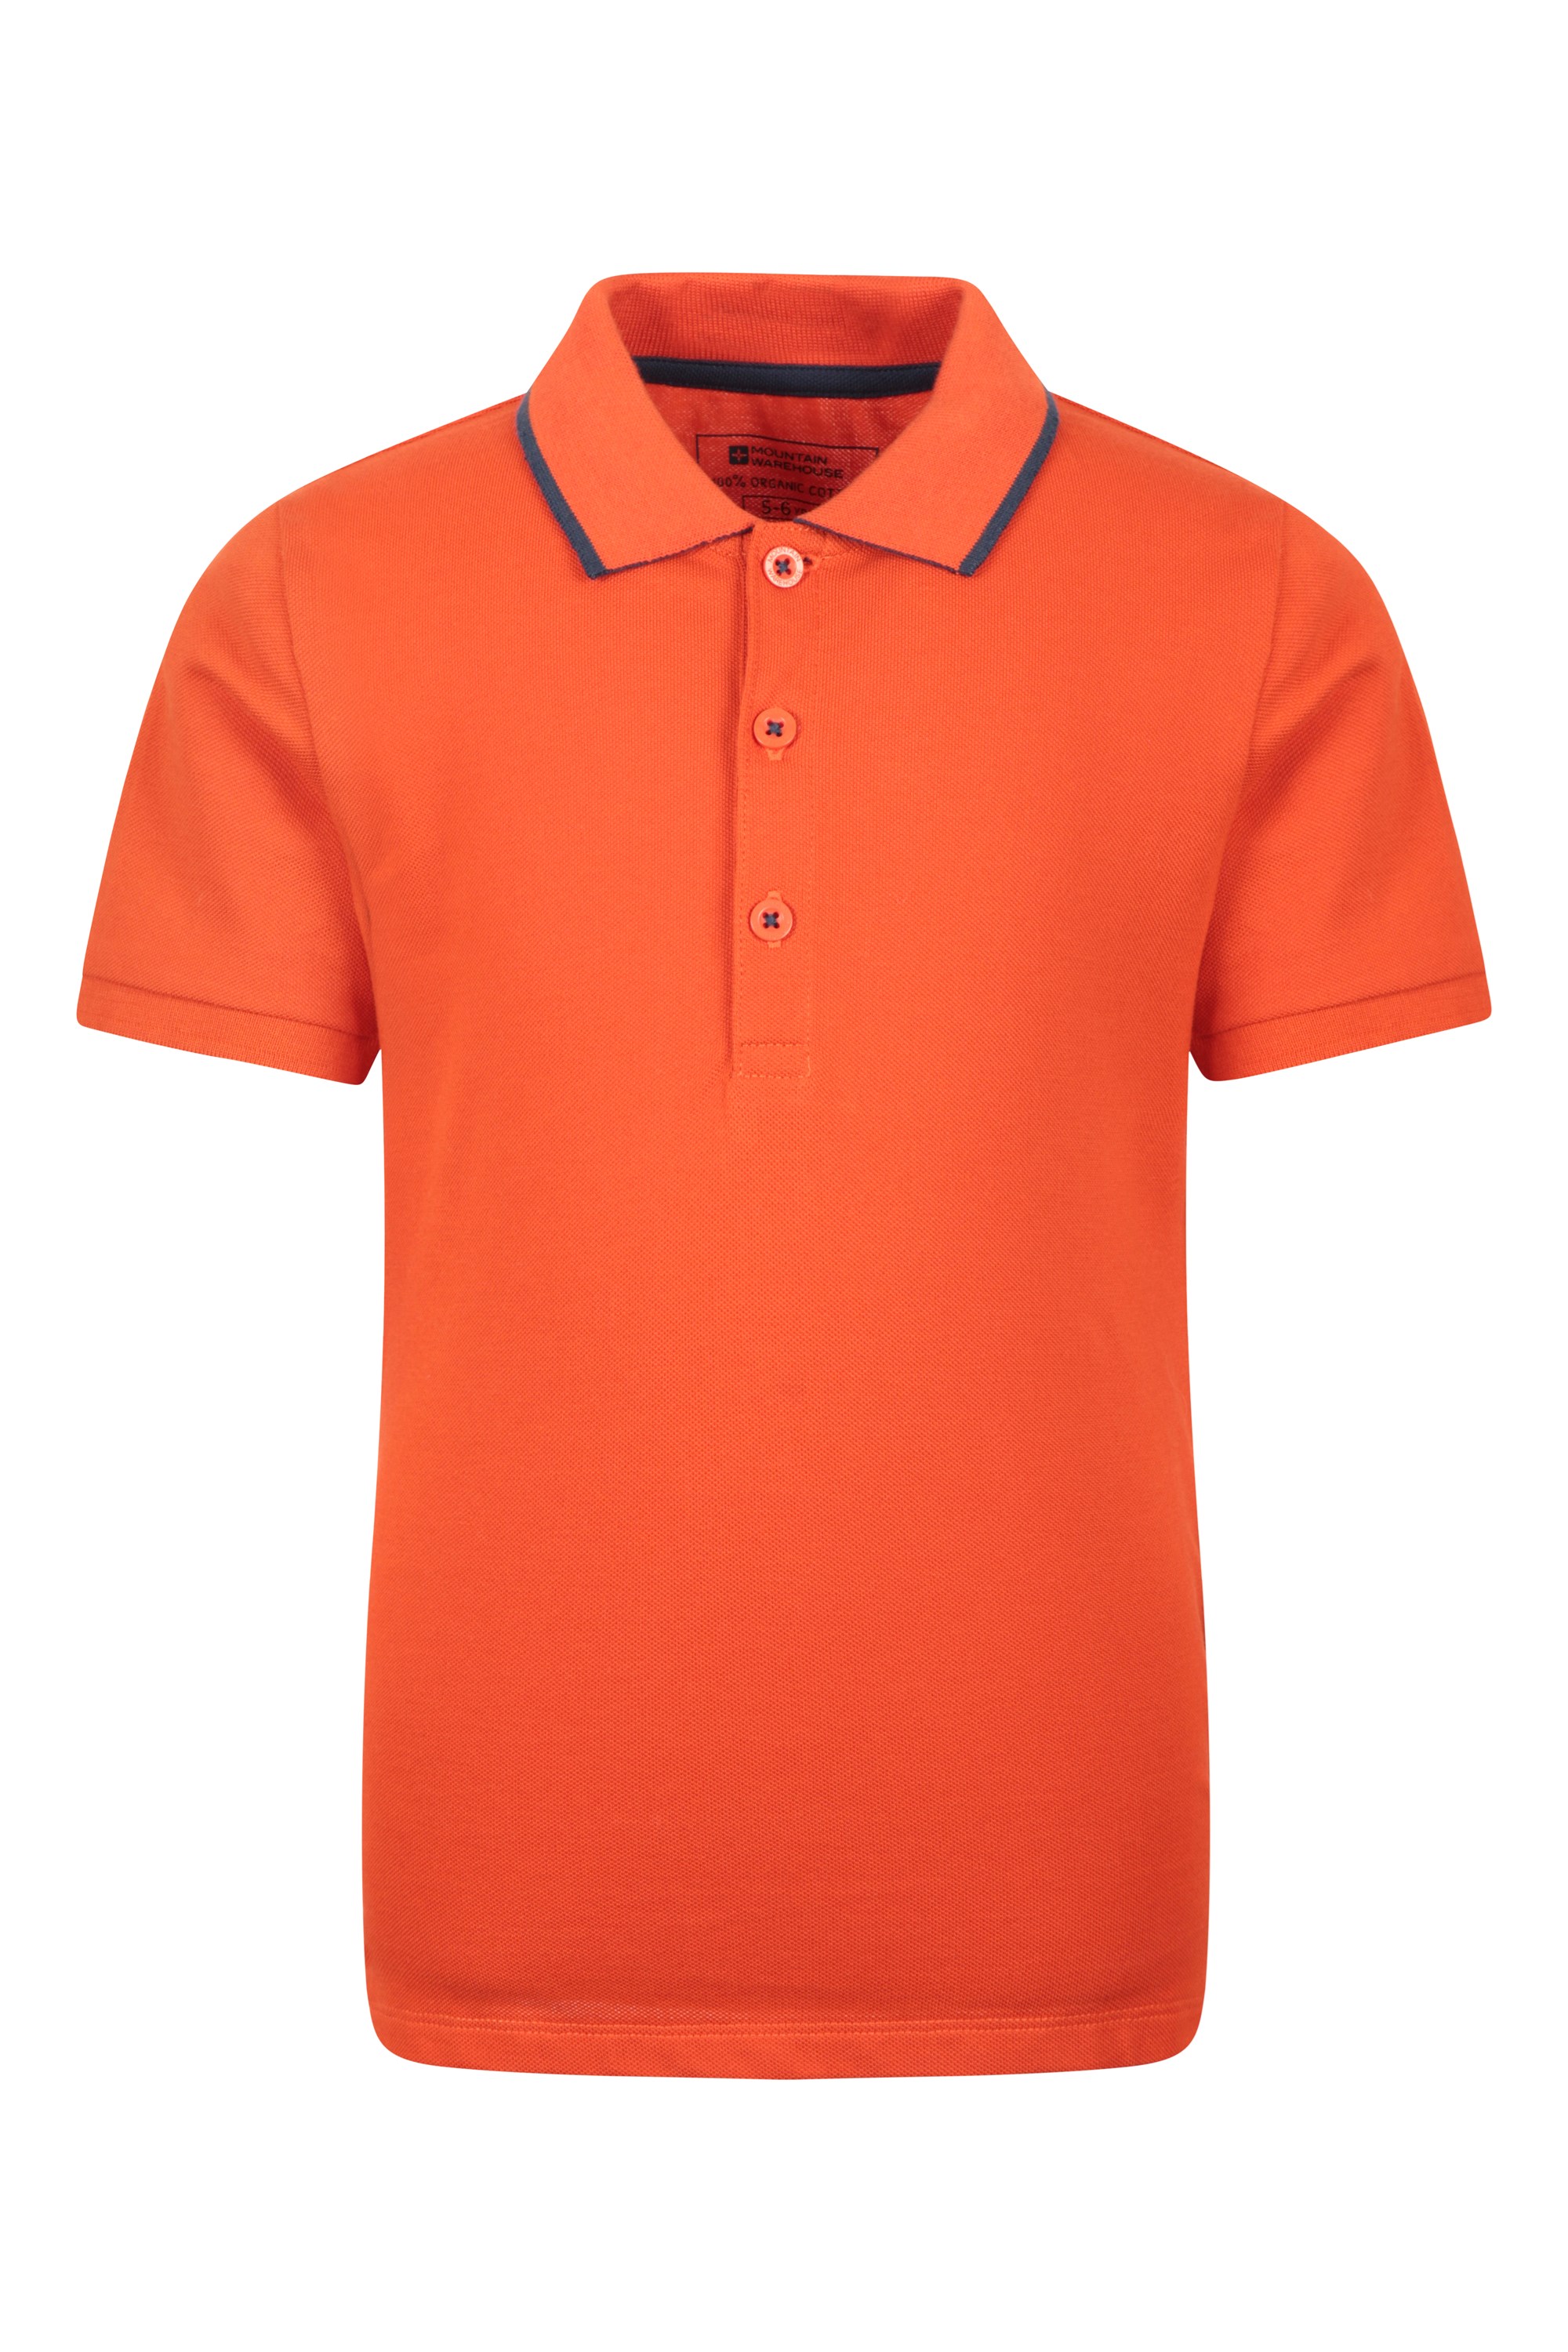 Plain - dziecięca koszulka polo z bawełny organicznej - Orange